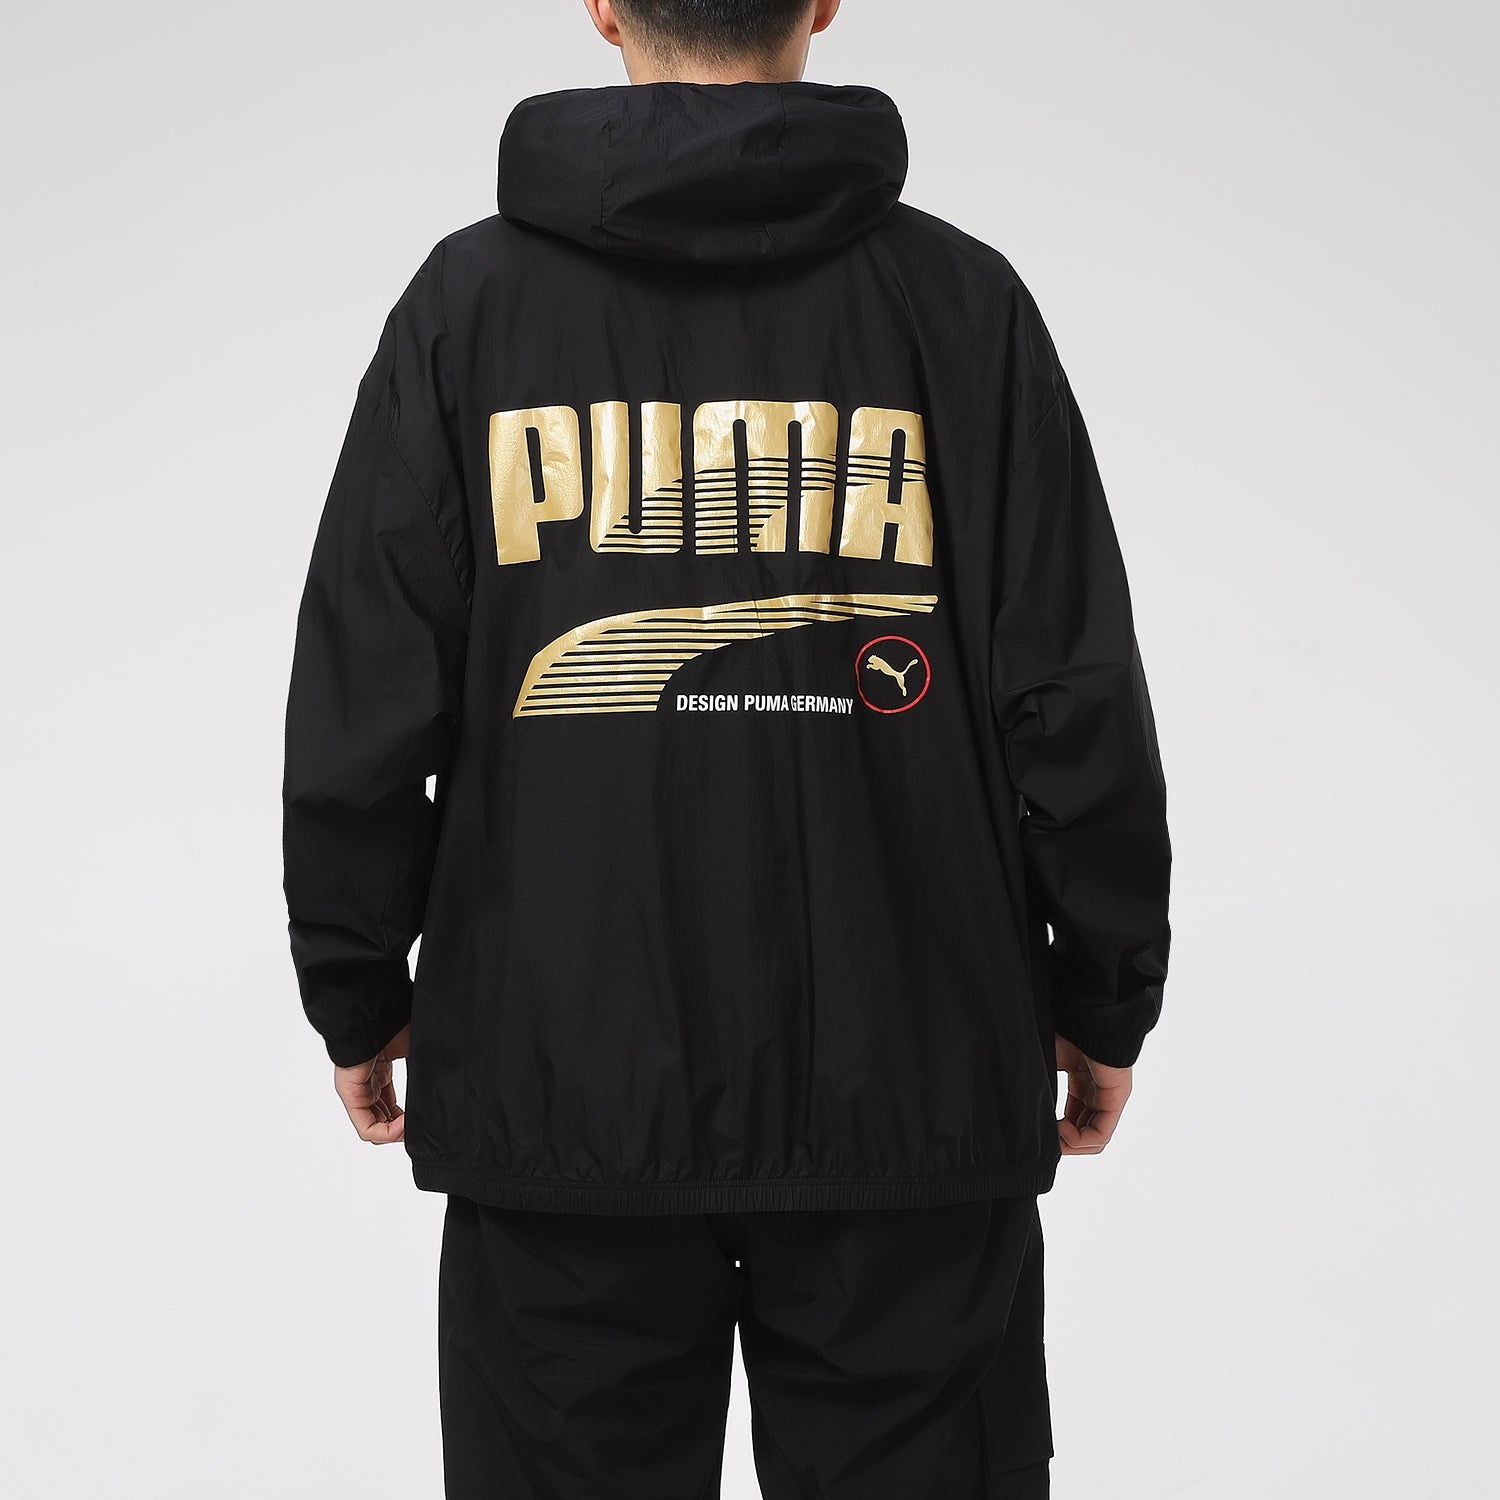 PUMA Decor 8 Lightweight Woven Jacket 'Black Gold' 531487-01 - 5